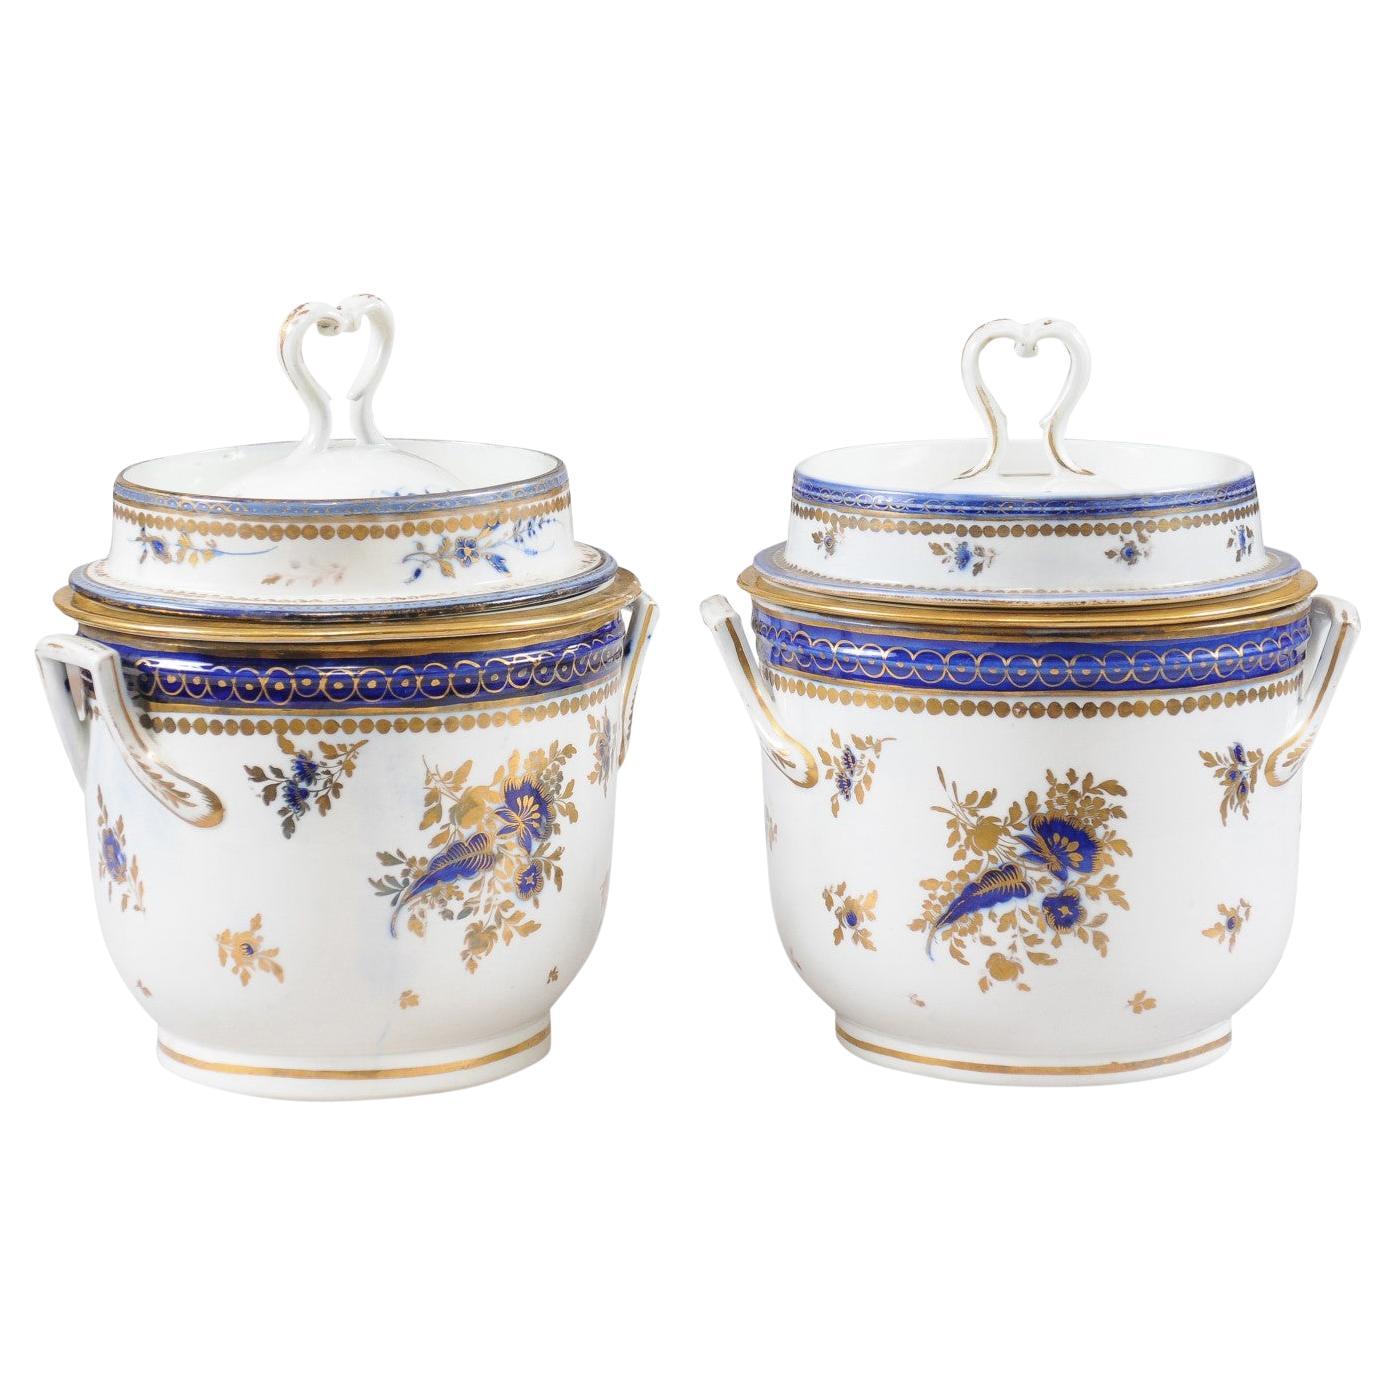 Pair of Georgian Porcelain Fruit Coolers w/ Cobalt Blue & Gilt Floral Decoration